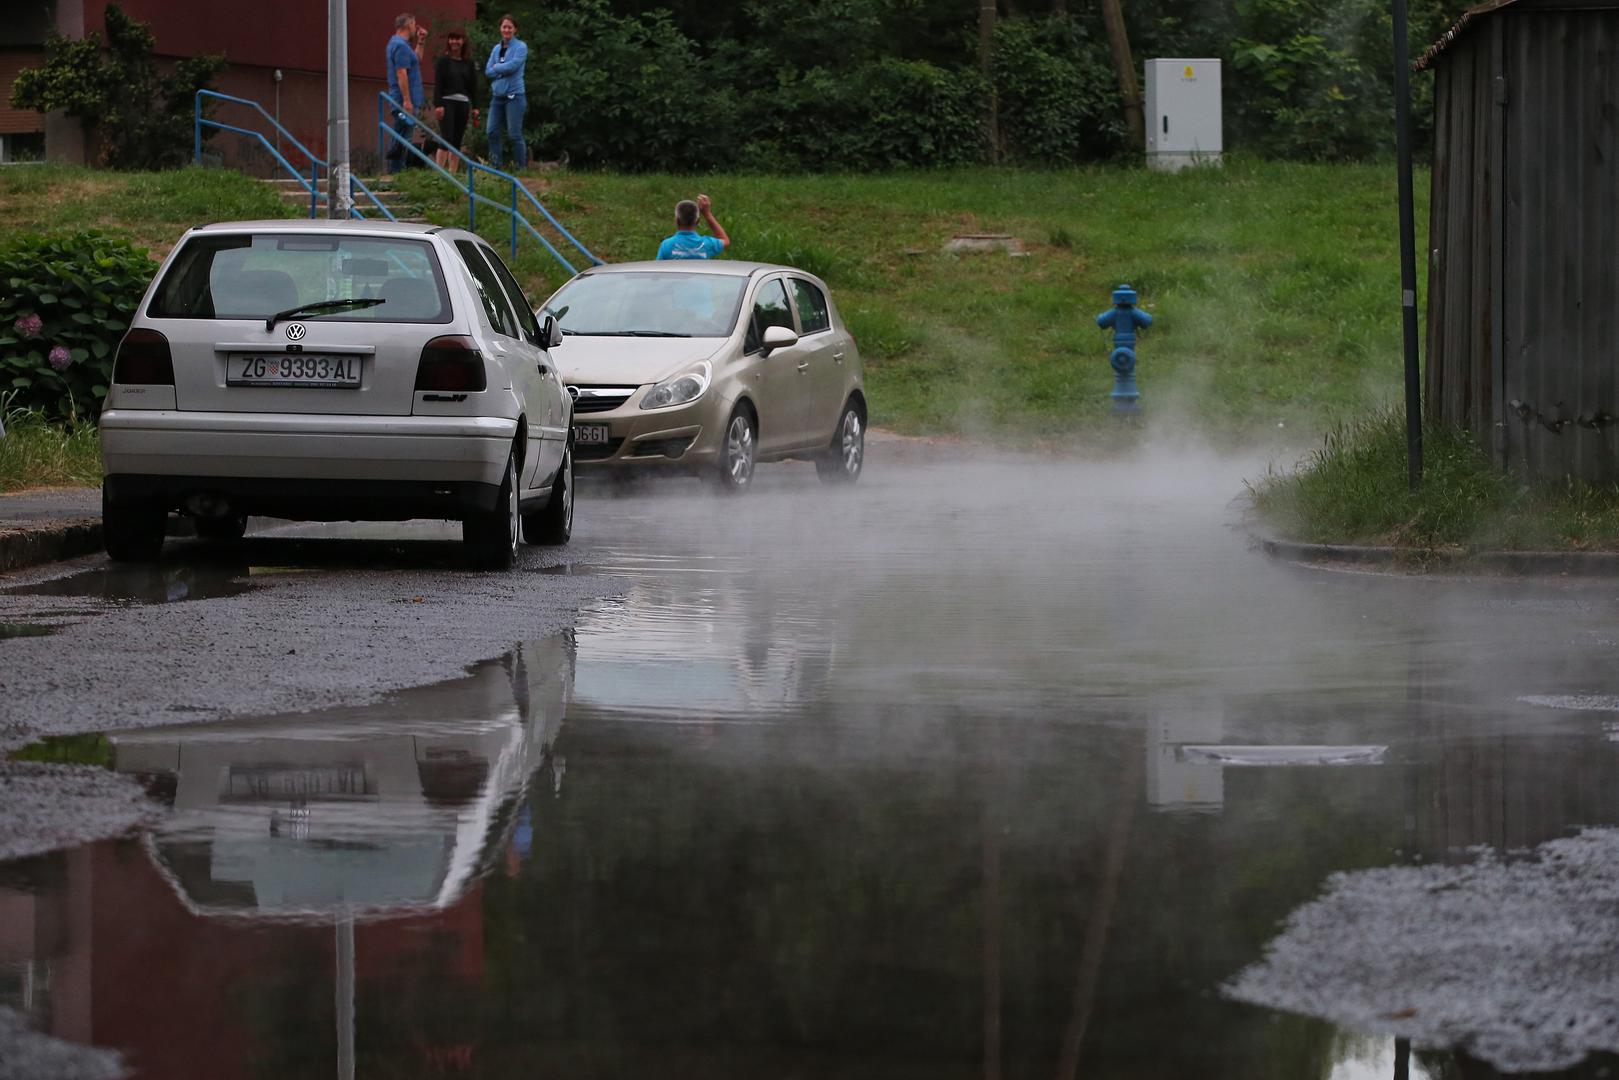 Cijev vrelovoda puknula je danas u Zagrebu i izazvala kratkotrajnu poplavu.